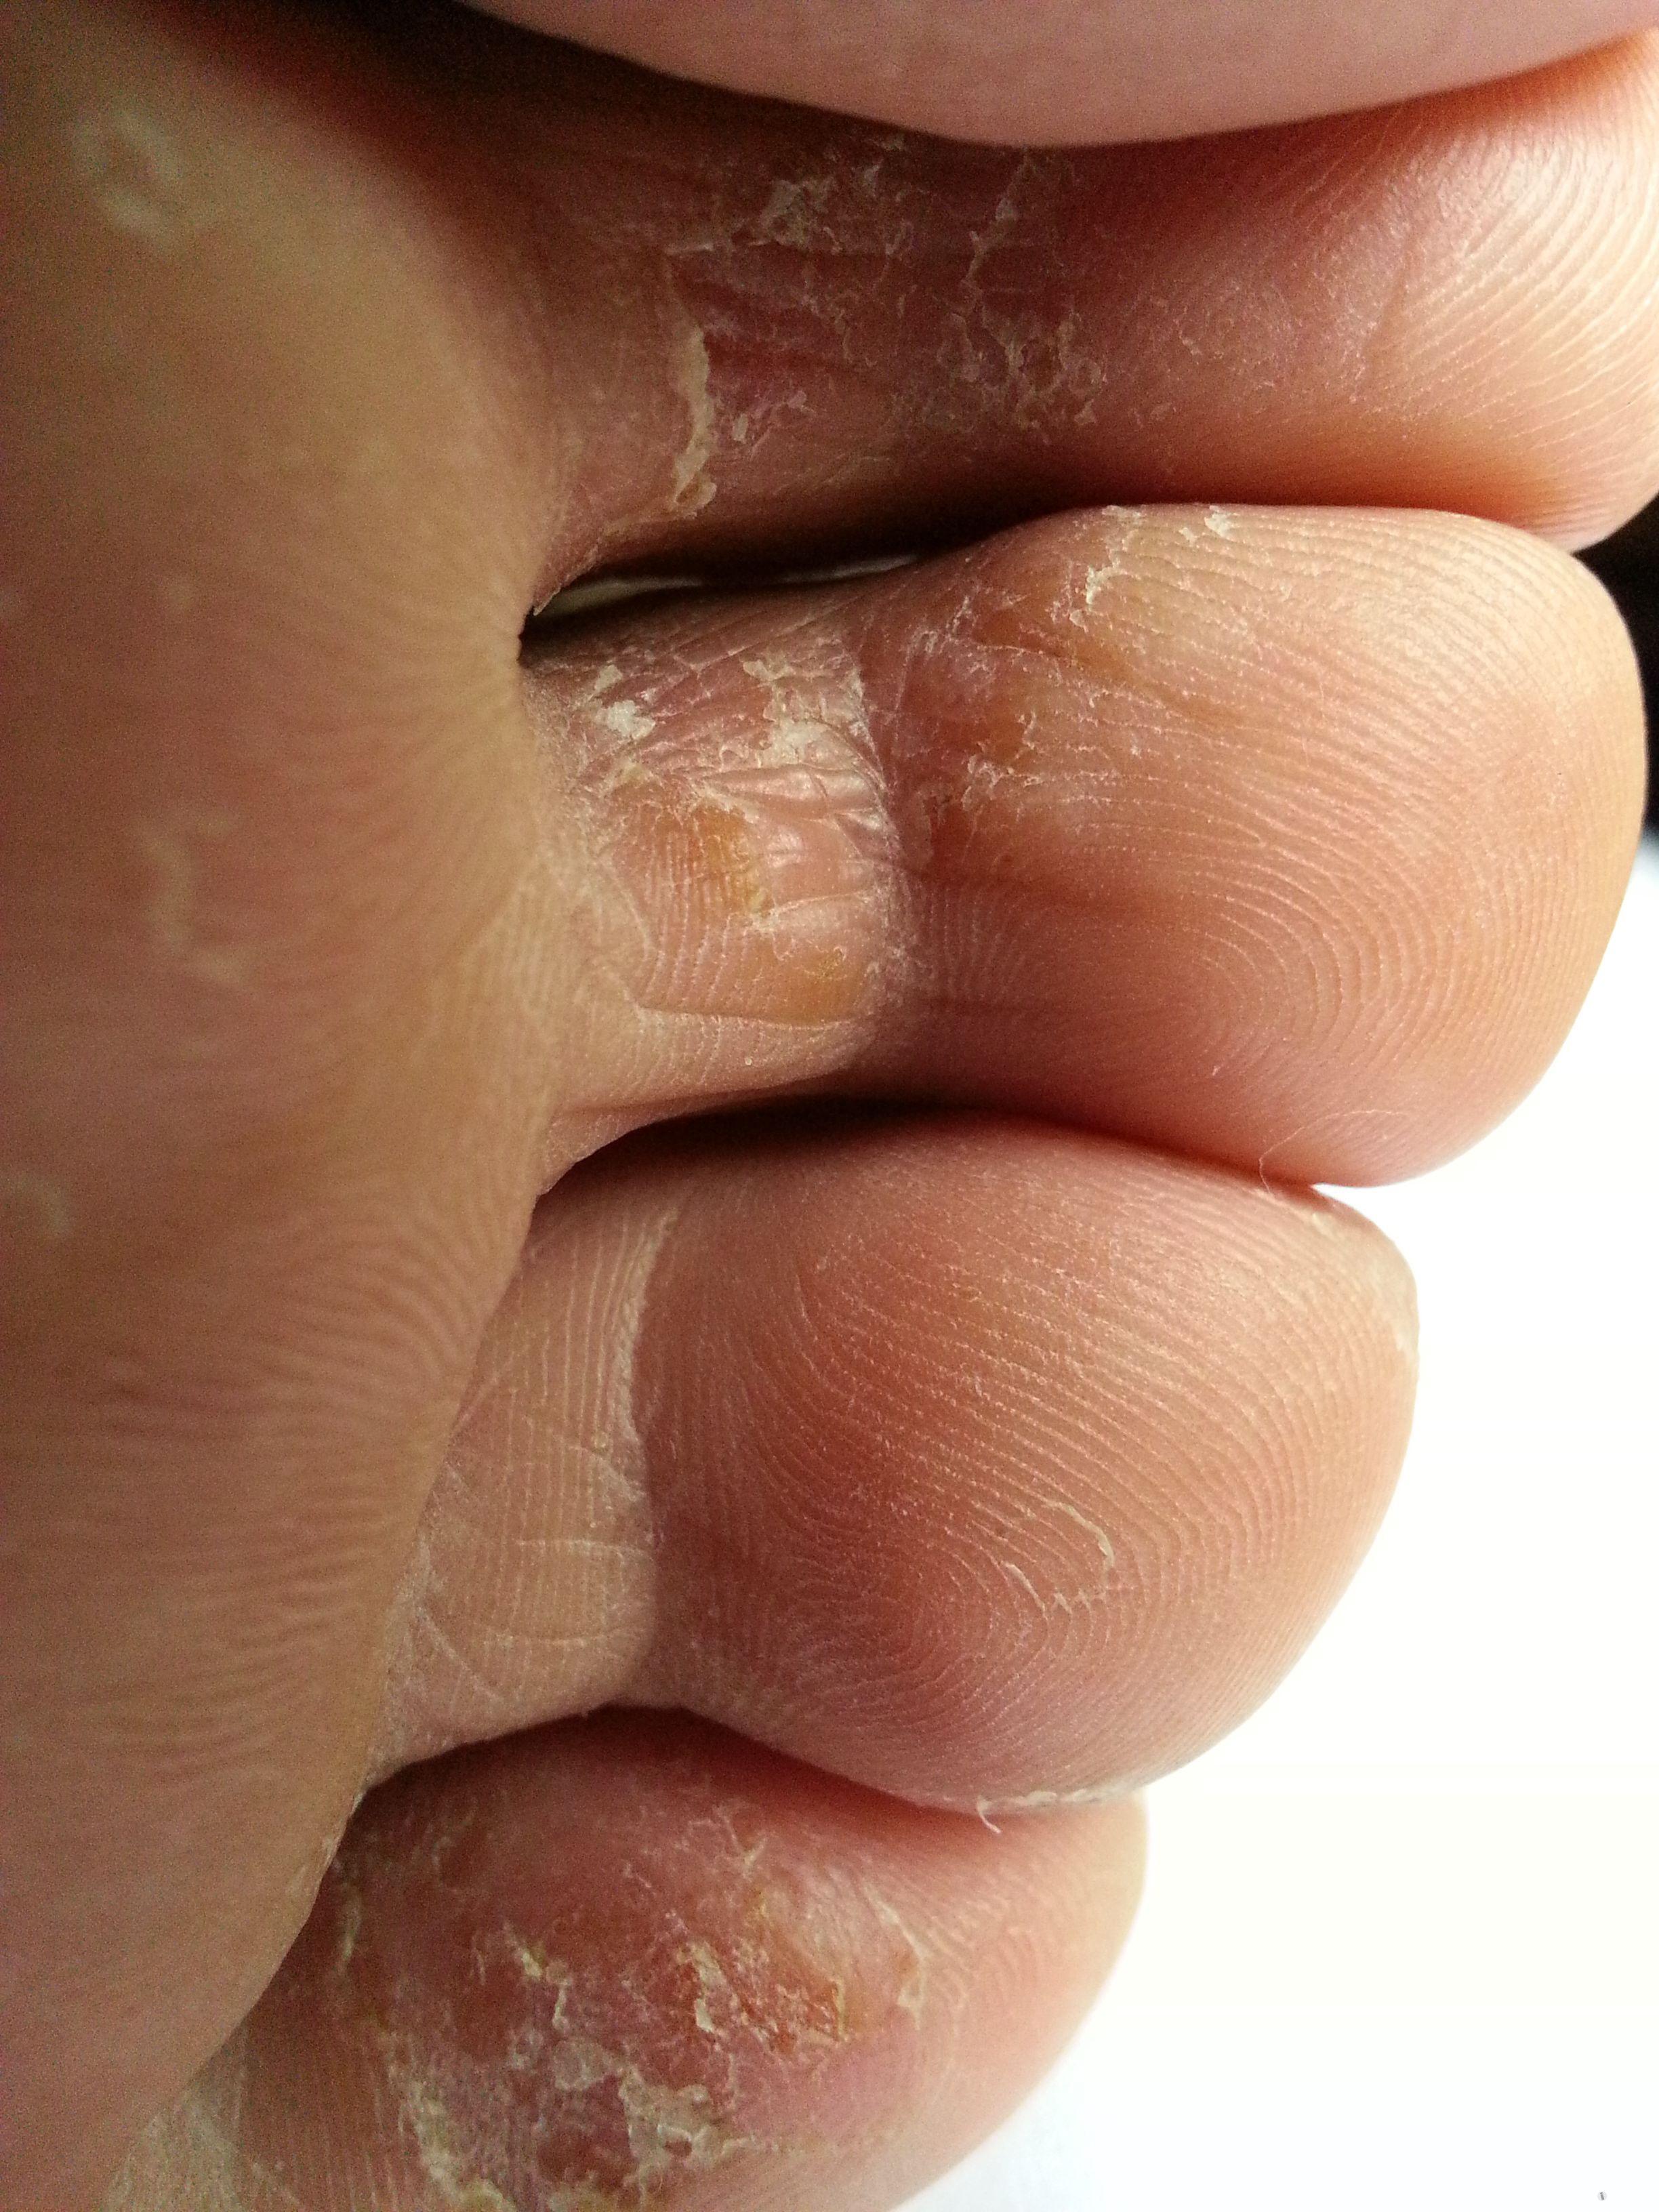 脚趾头细菌感染图片图片